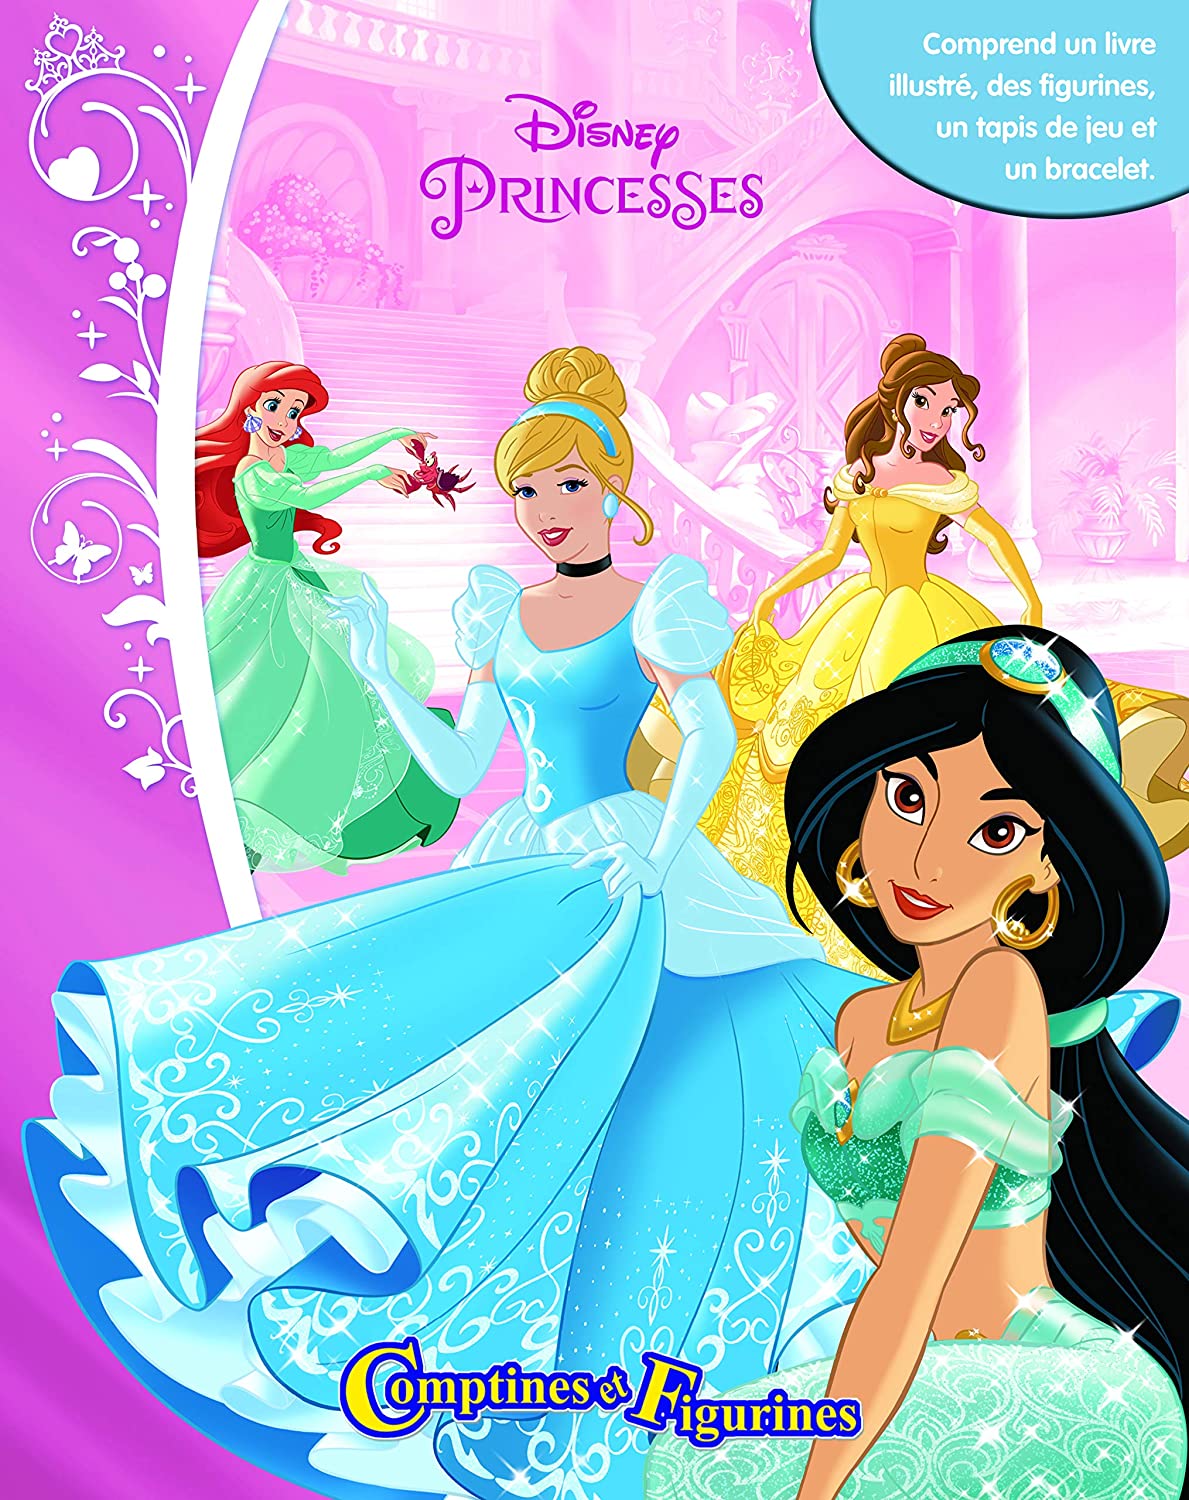 Disney Princesses Comptines et figurines